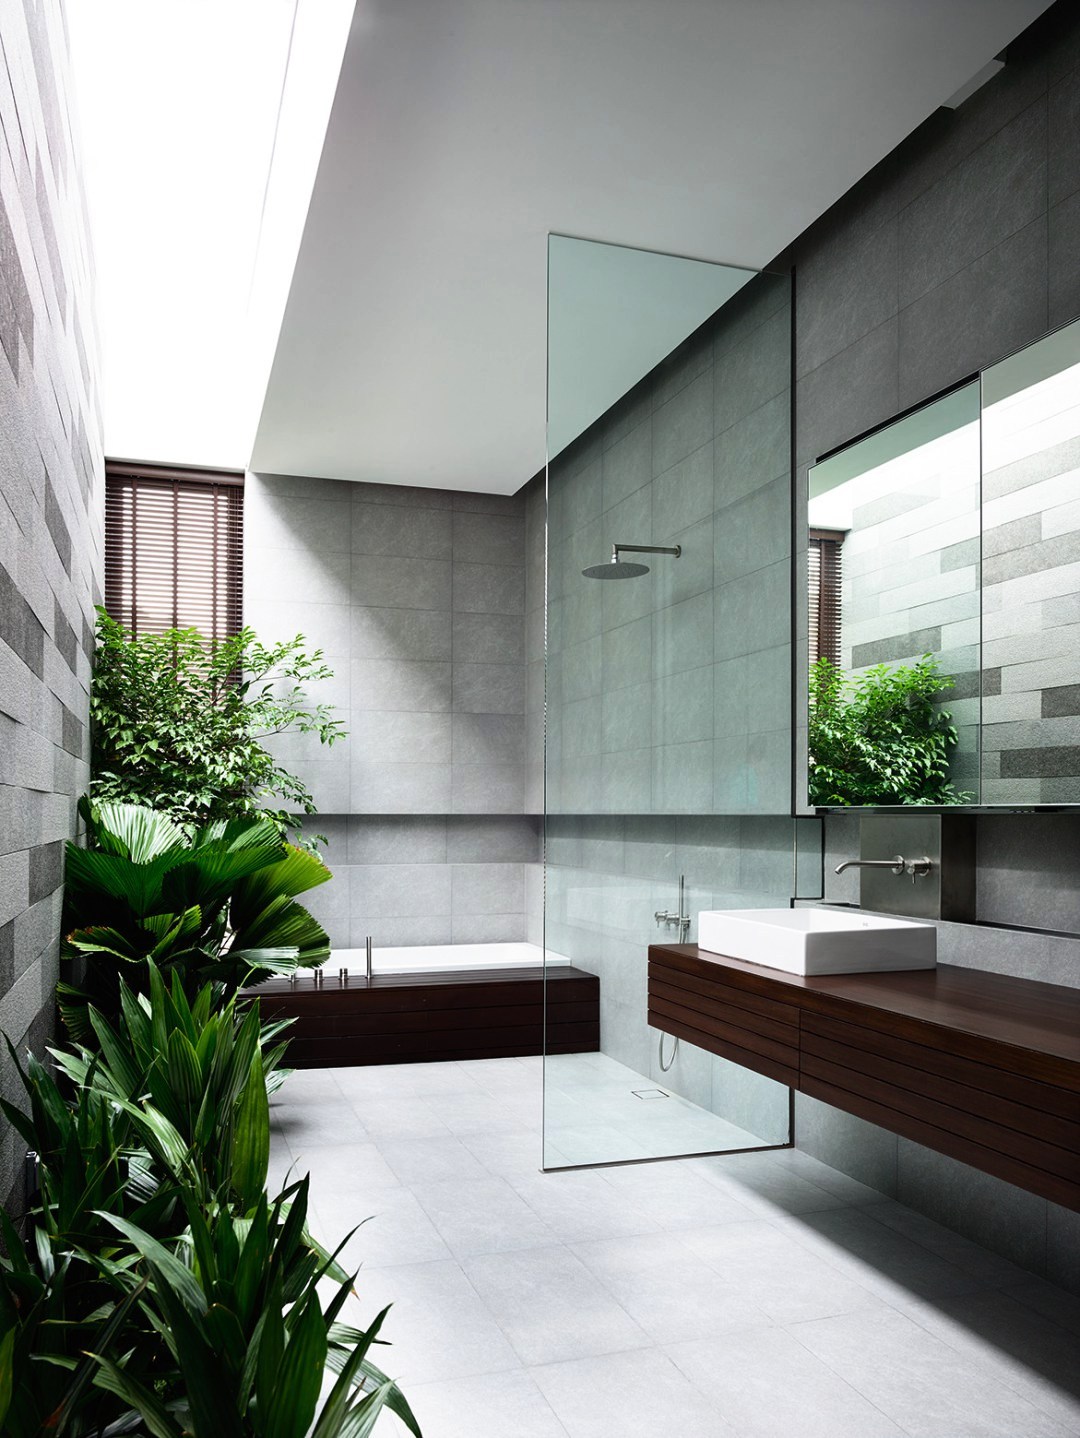 19. Amazing Tropical Bathroom Ideas